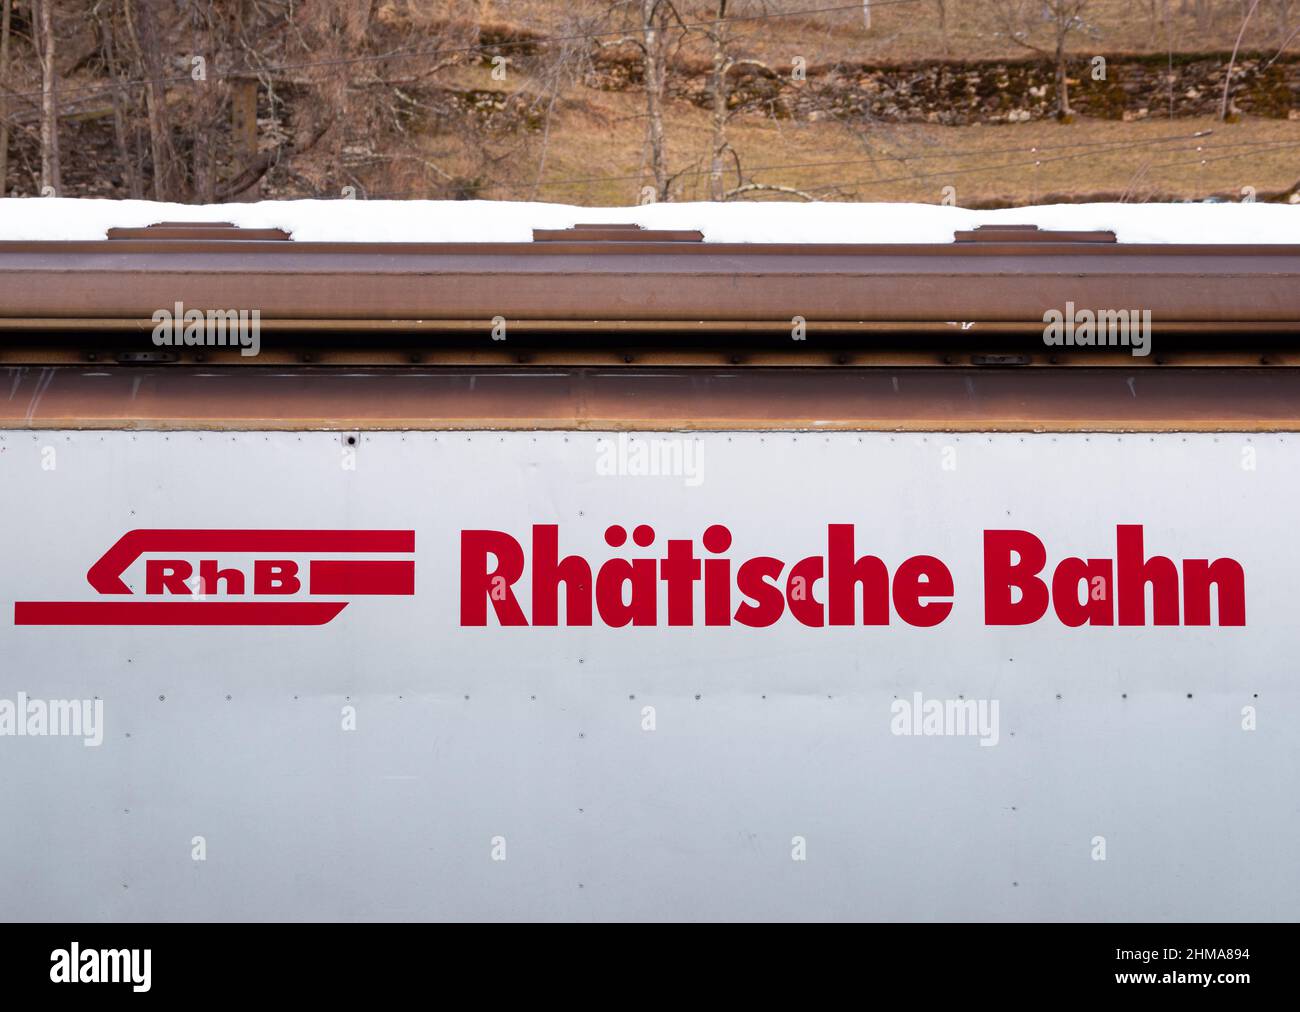 Poschiavo, Suisse - 19 janvier 2022: Le chemin de fer rhétien - Ferrovia retica - est une compagnie de chemin de fer et un opérateur d'infrastructure en Suisse. Banque D'Images